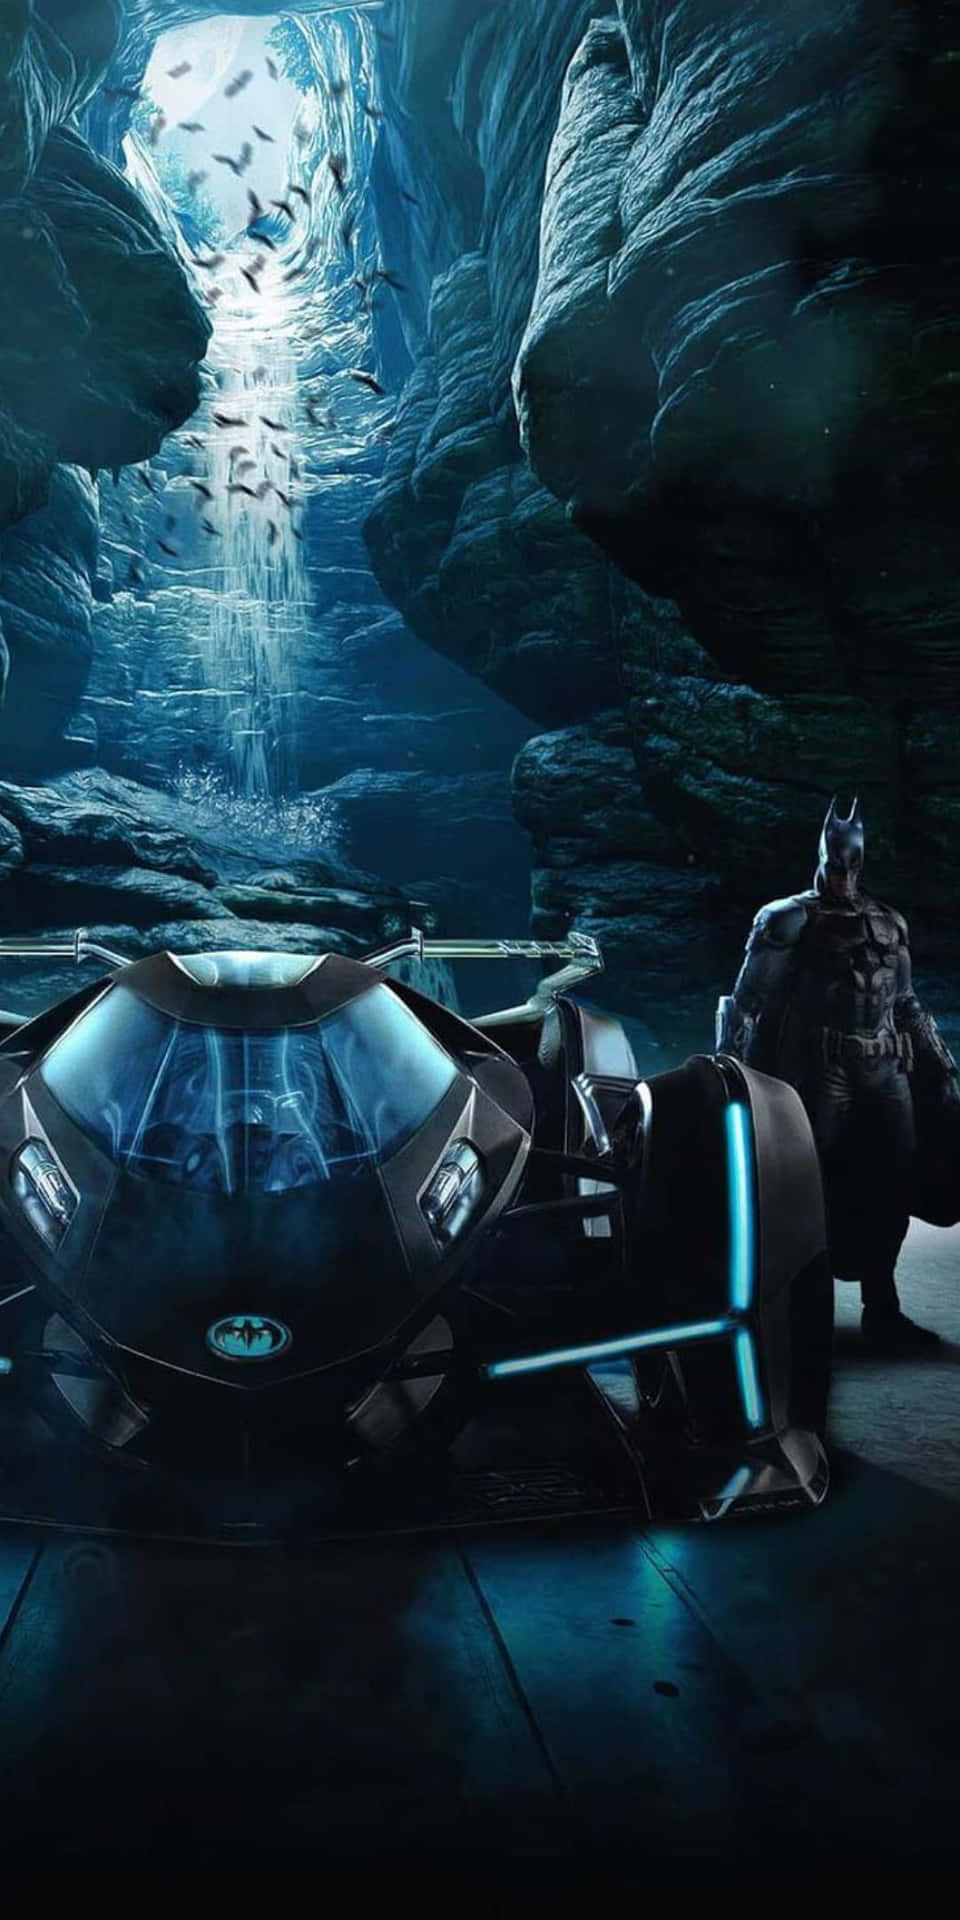 Vivil'emozione Della Famosa Batmobile Di Batman Nell'incredibile Evento Di Lancio Del Pixel 3.